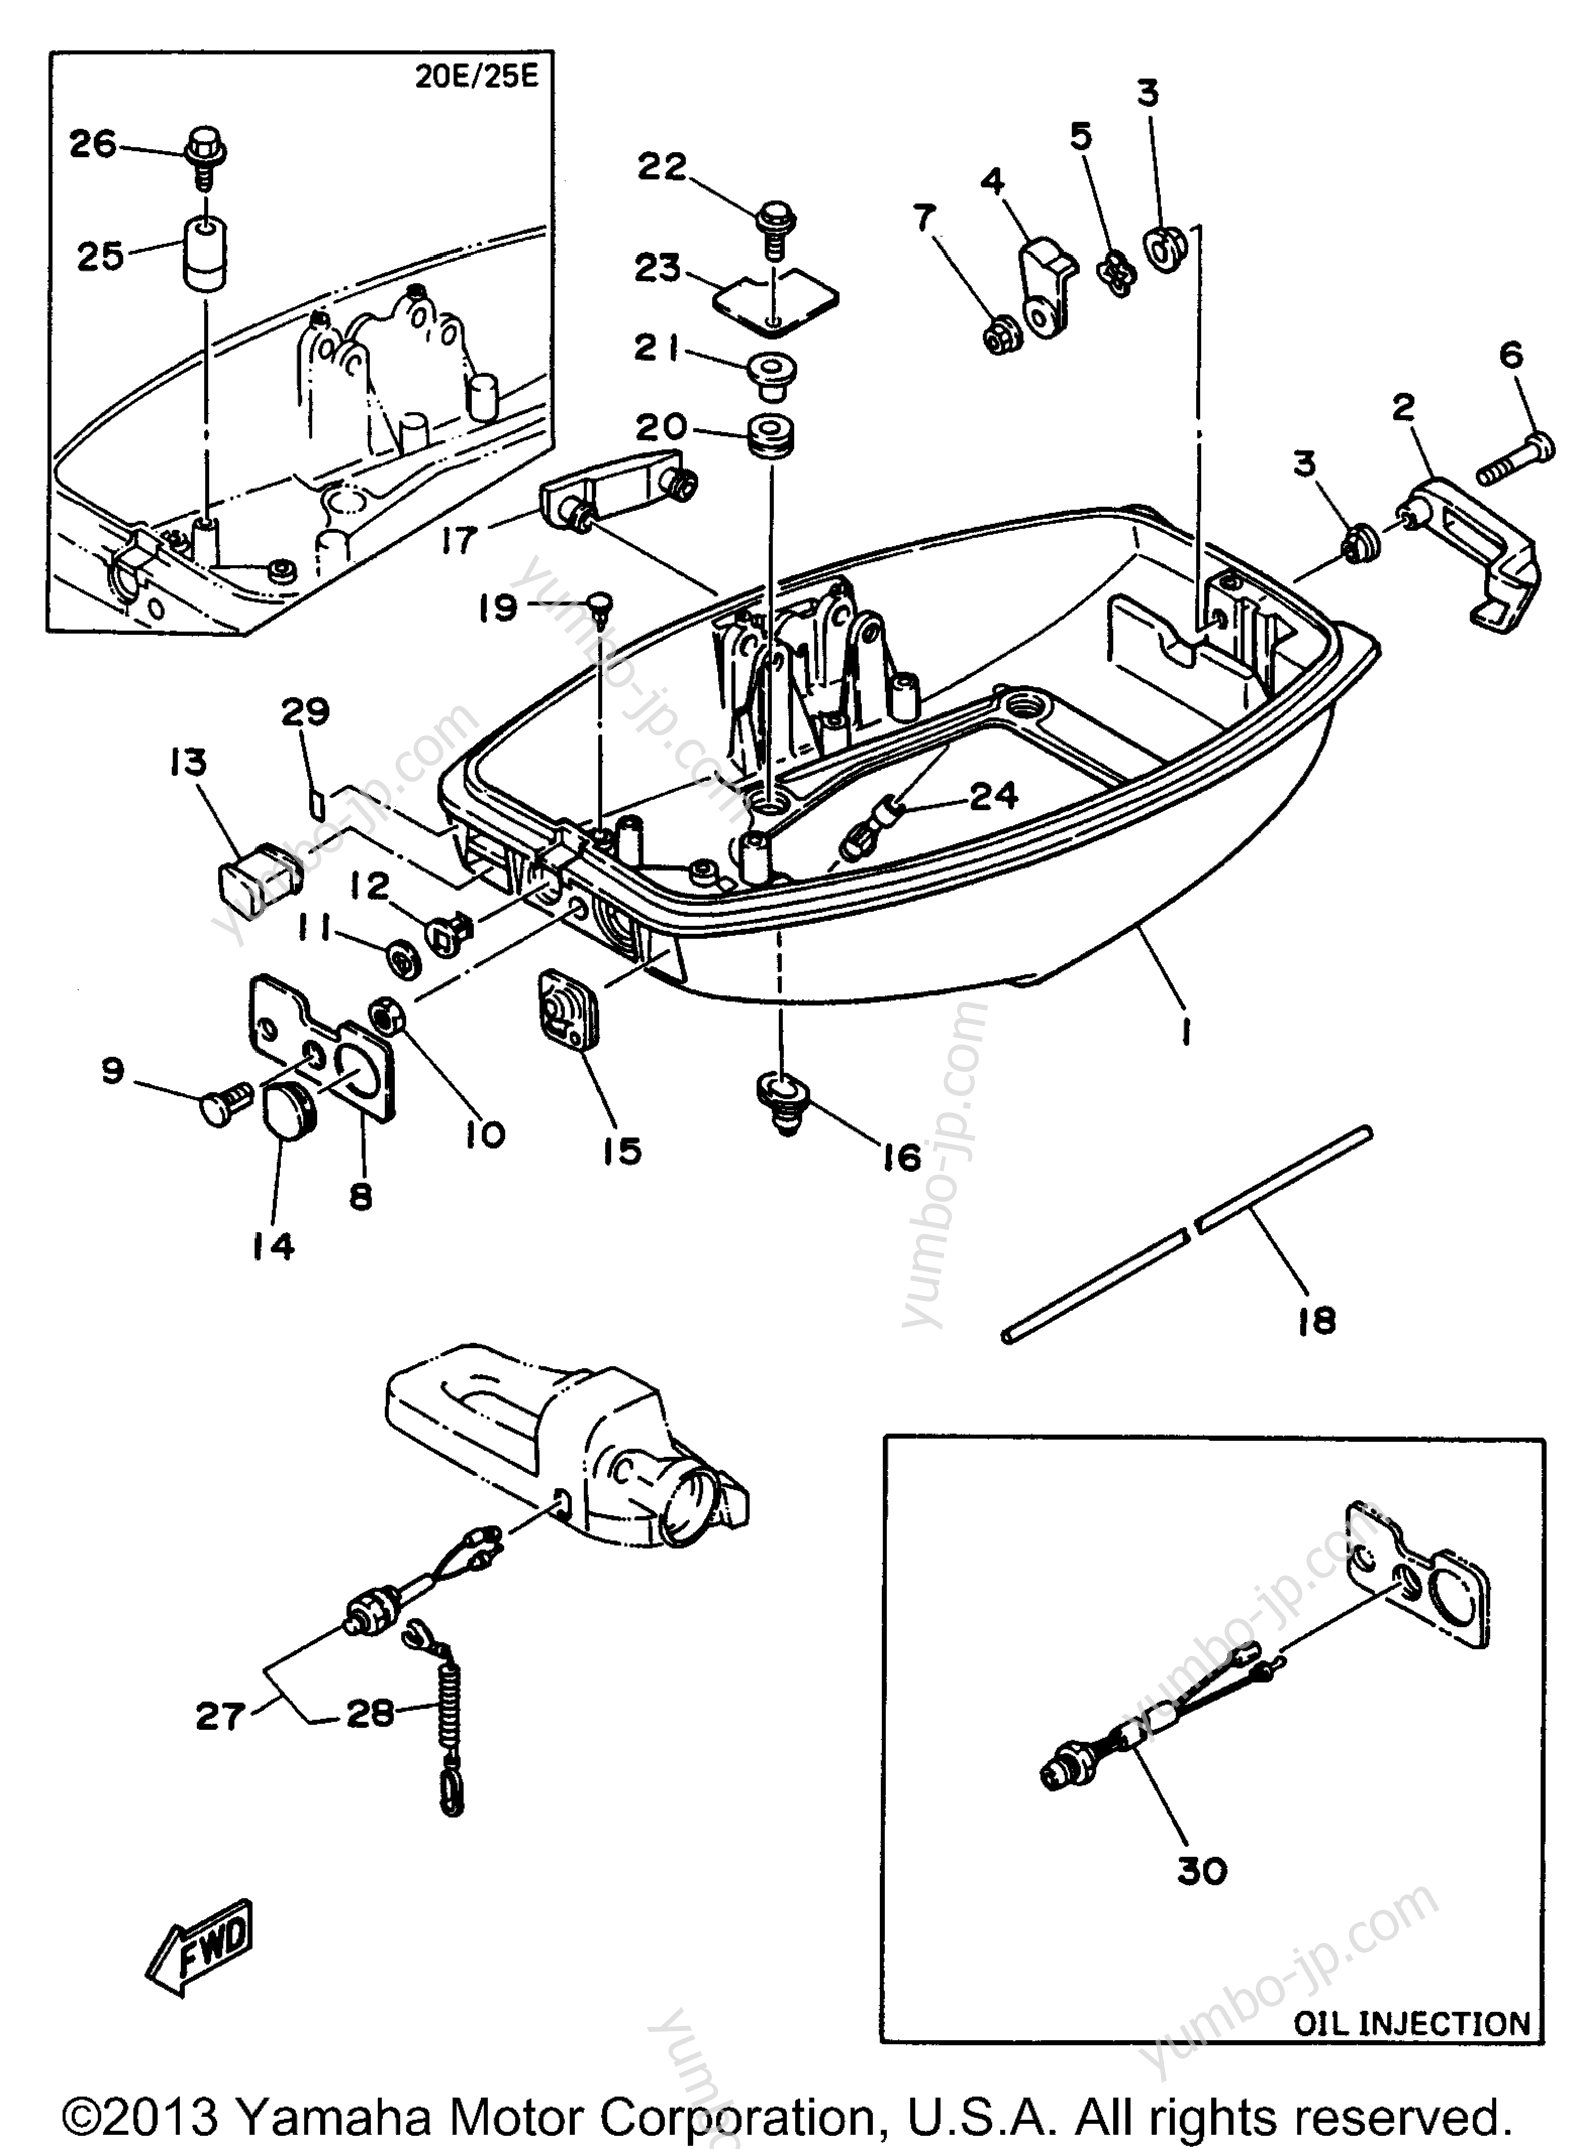 Bottom Cowling для лодочных моторов YAMAHA 20MSHU 1996 г.